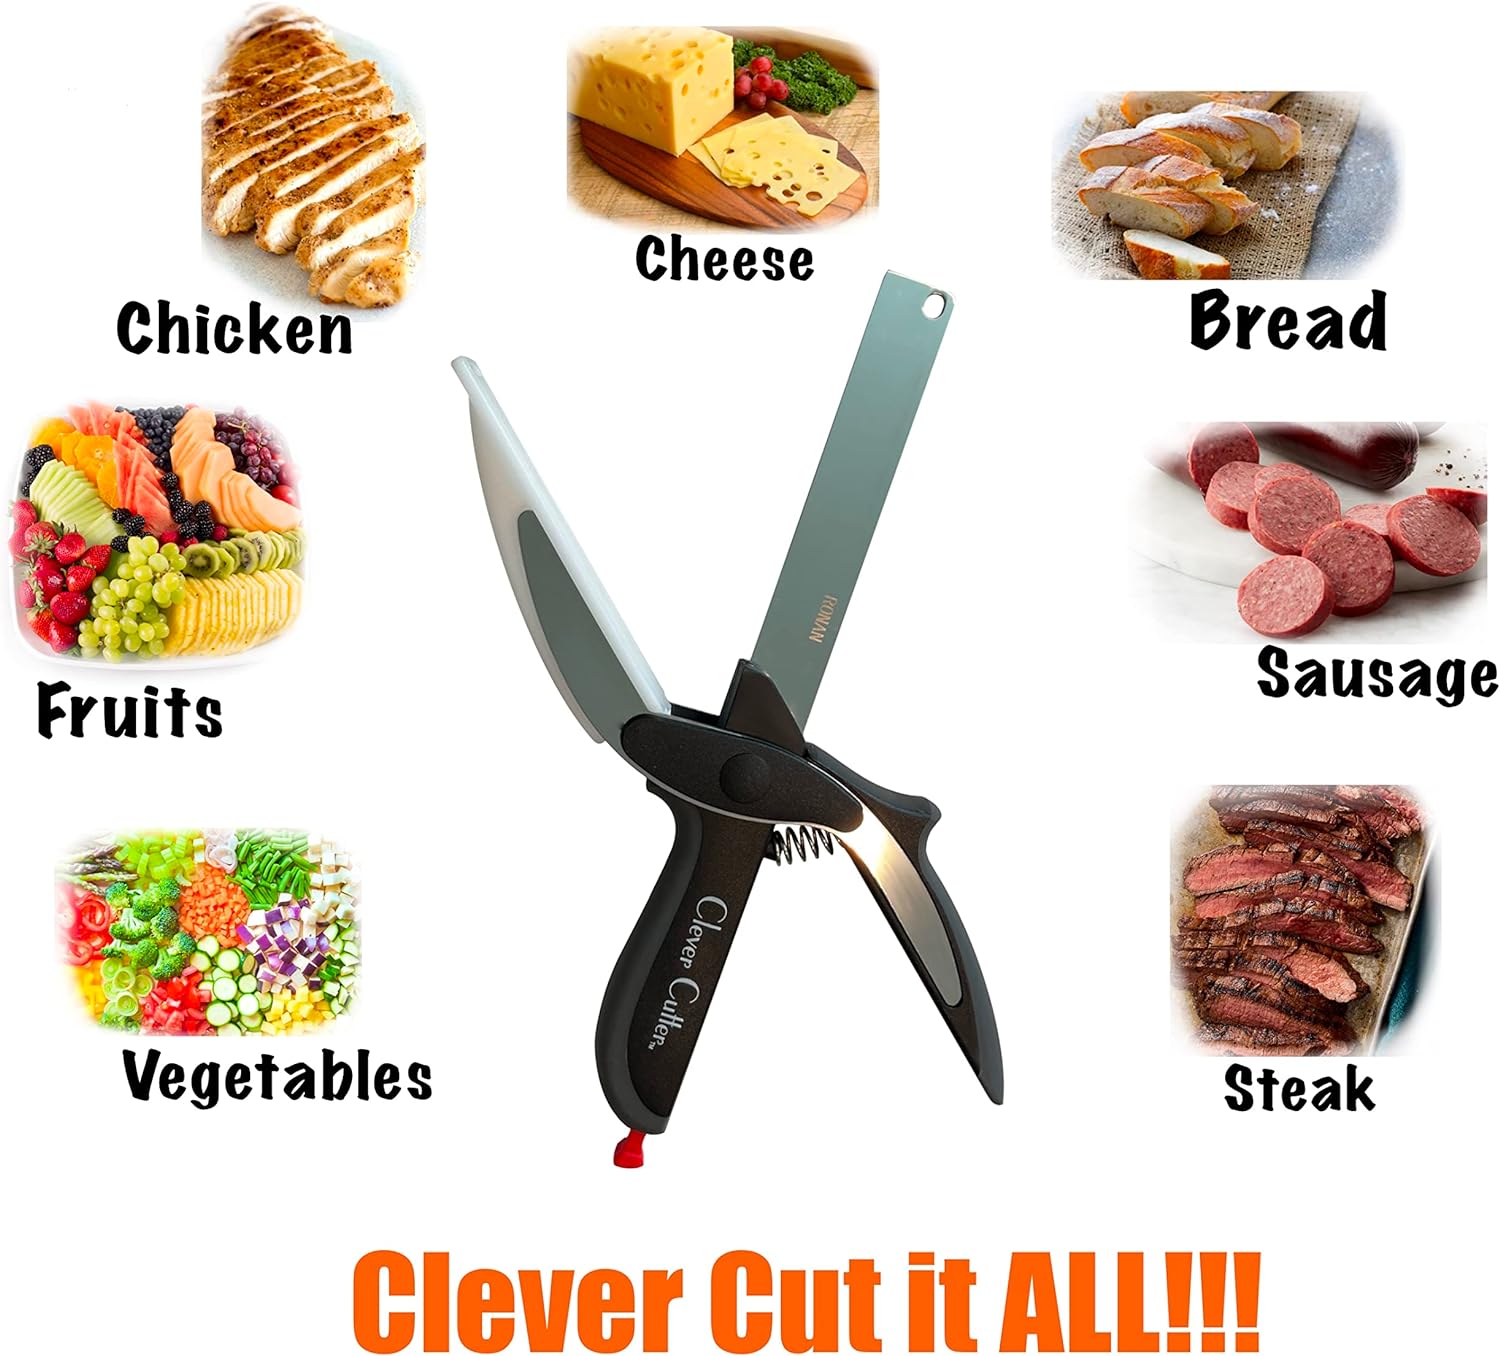 Clever Cutter 2-in-1 Knife & Cutting Board